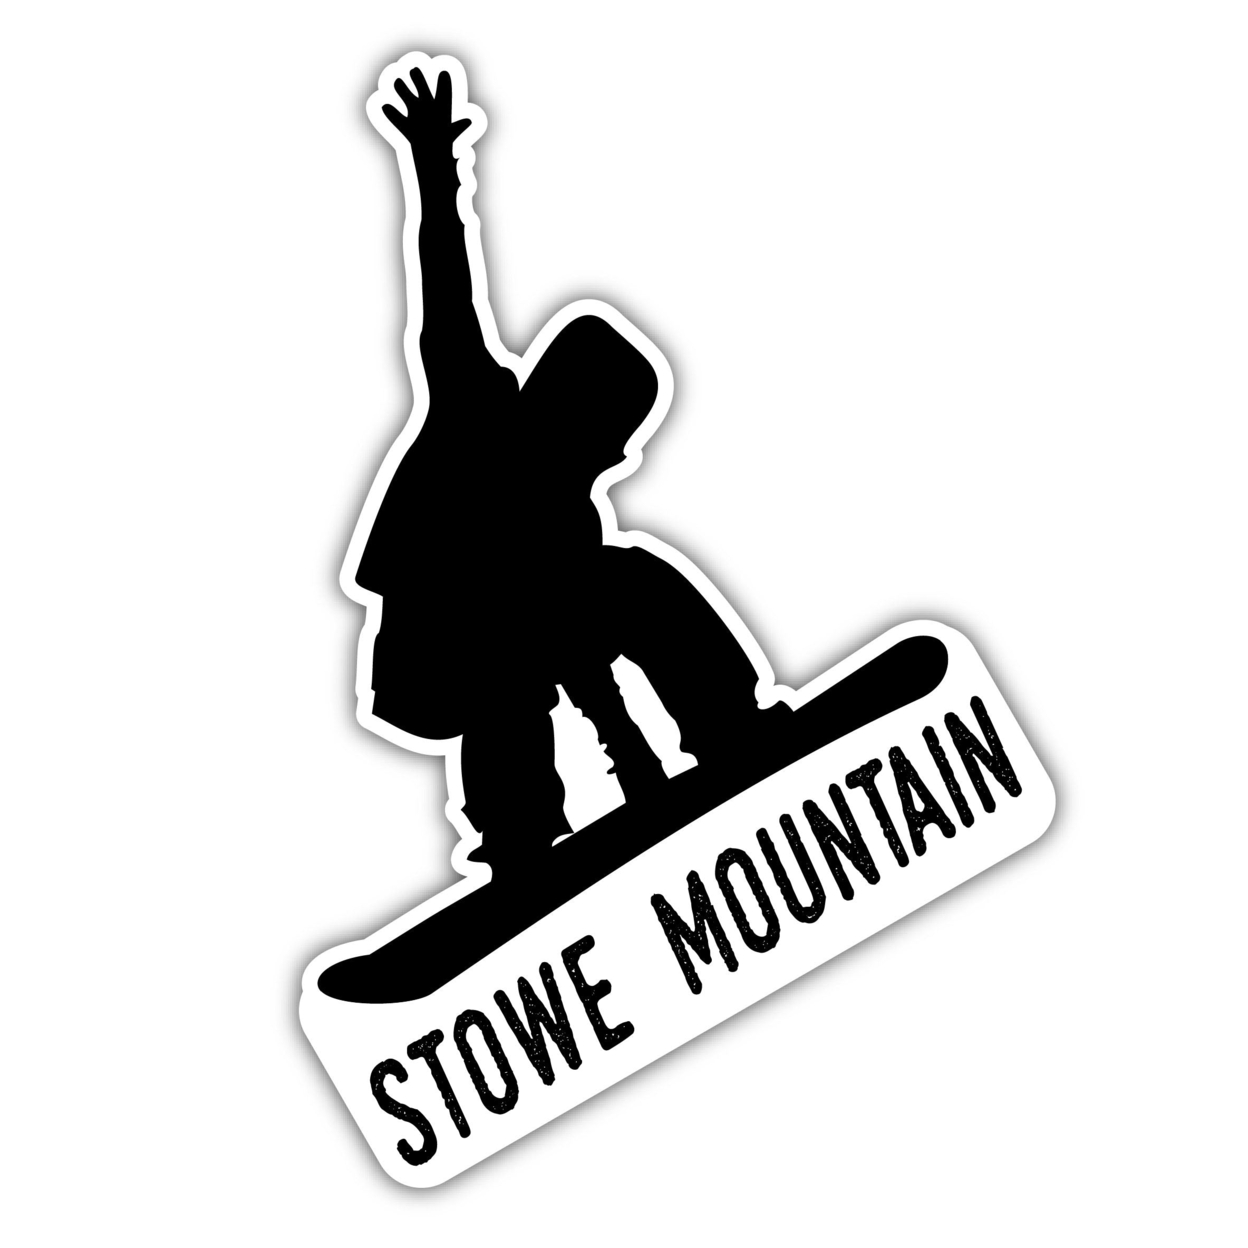 Stowe Mountain Vermont Ski Adventures Souvenir 4 Inch Vinyl Decal Sticker Board Design